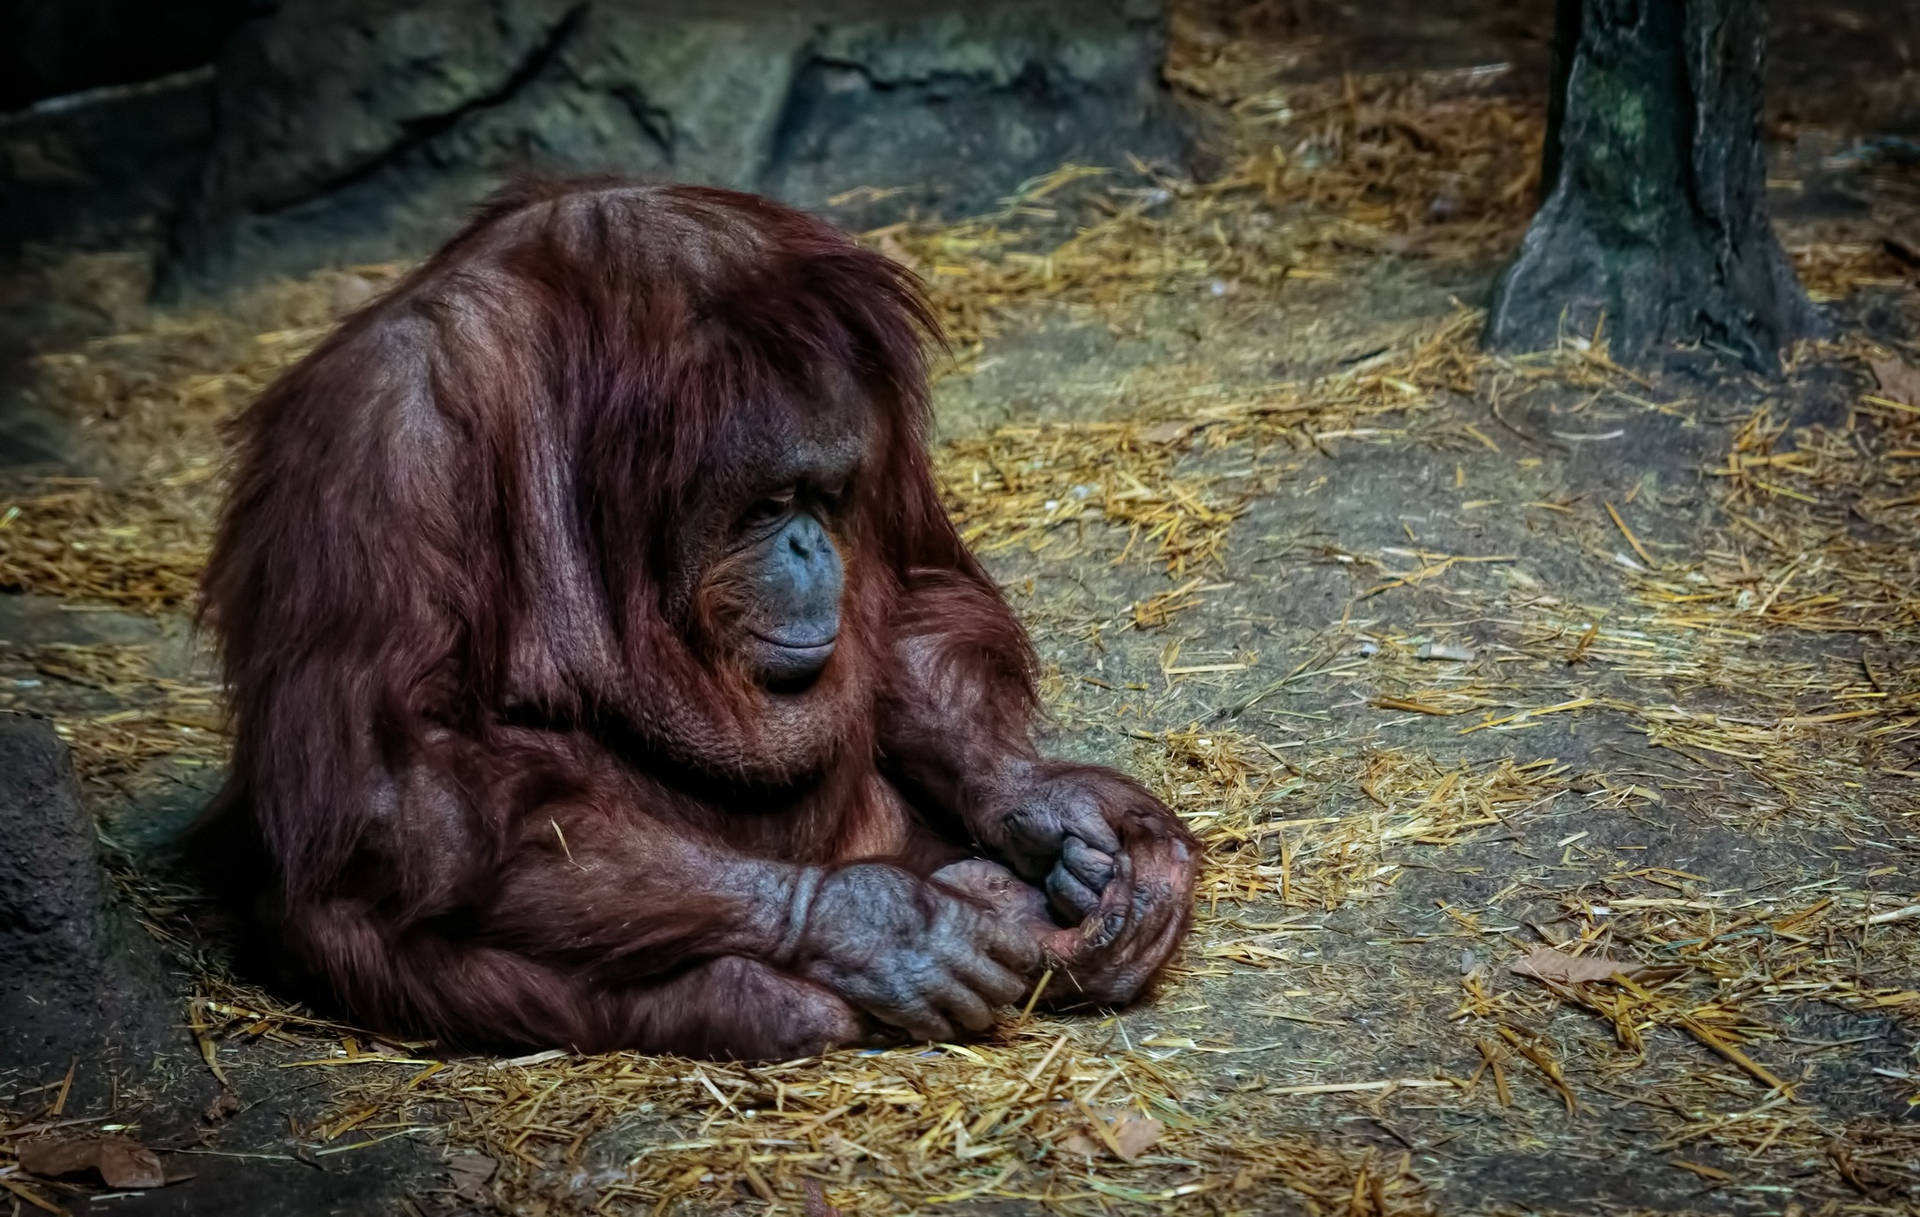 Sad Aesthetic Monkey At Zoo